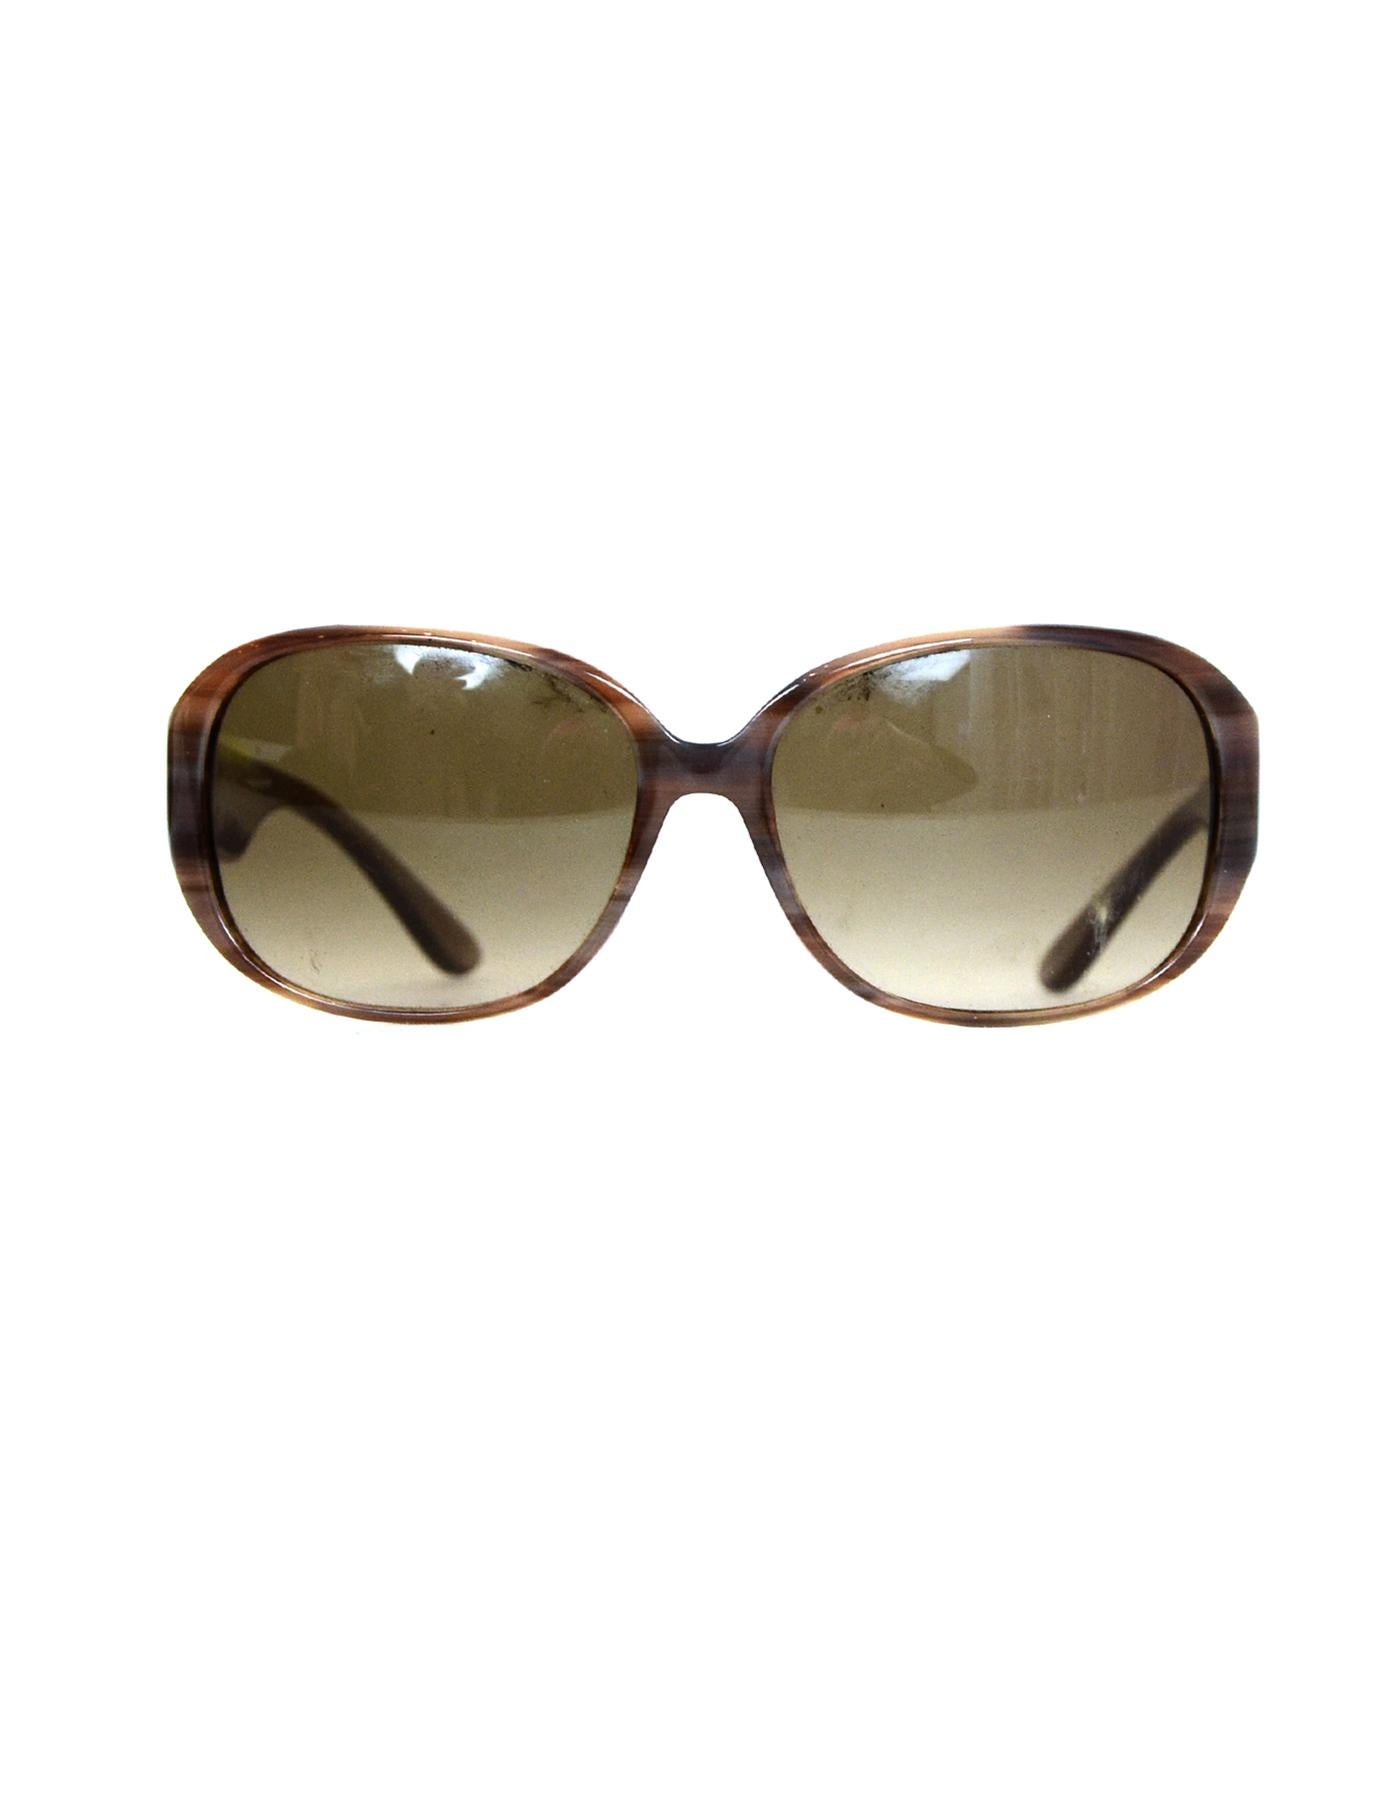 Salvatore Ferragamo Tan Resin Sunglasses Frame W/ Case/Box In Excellent Condition In New York, NY